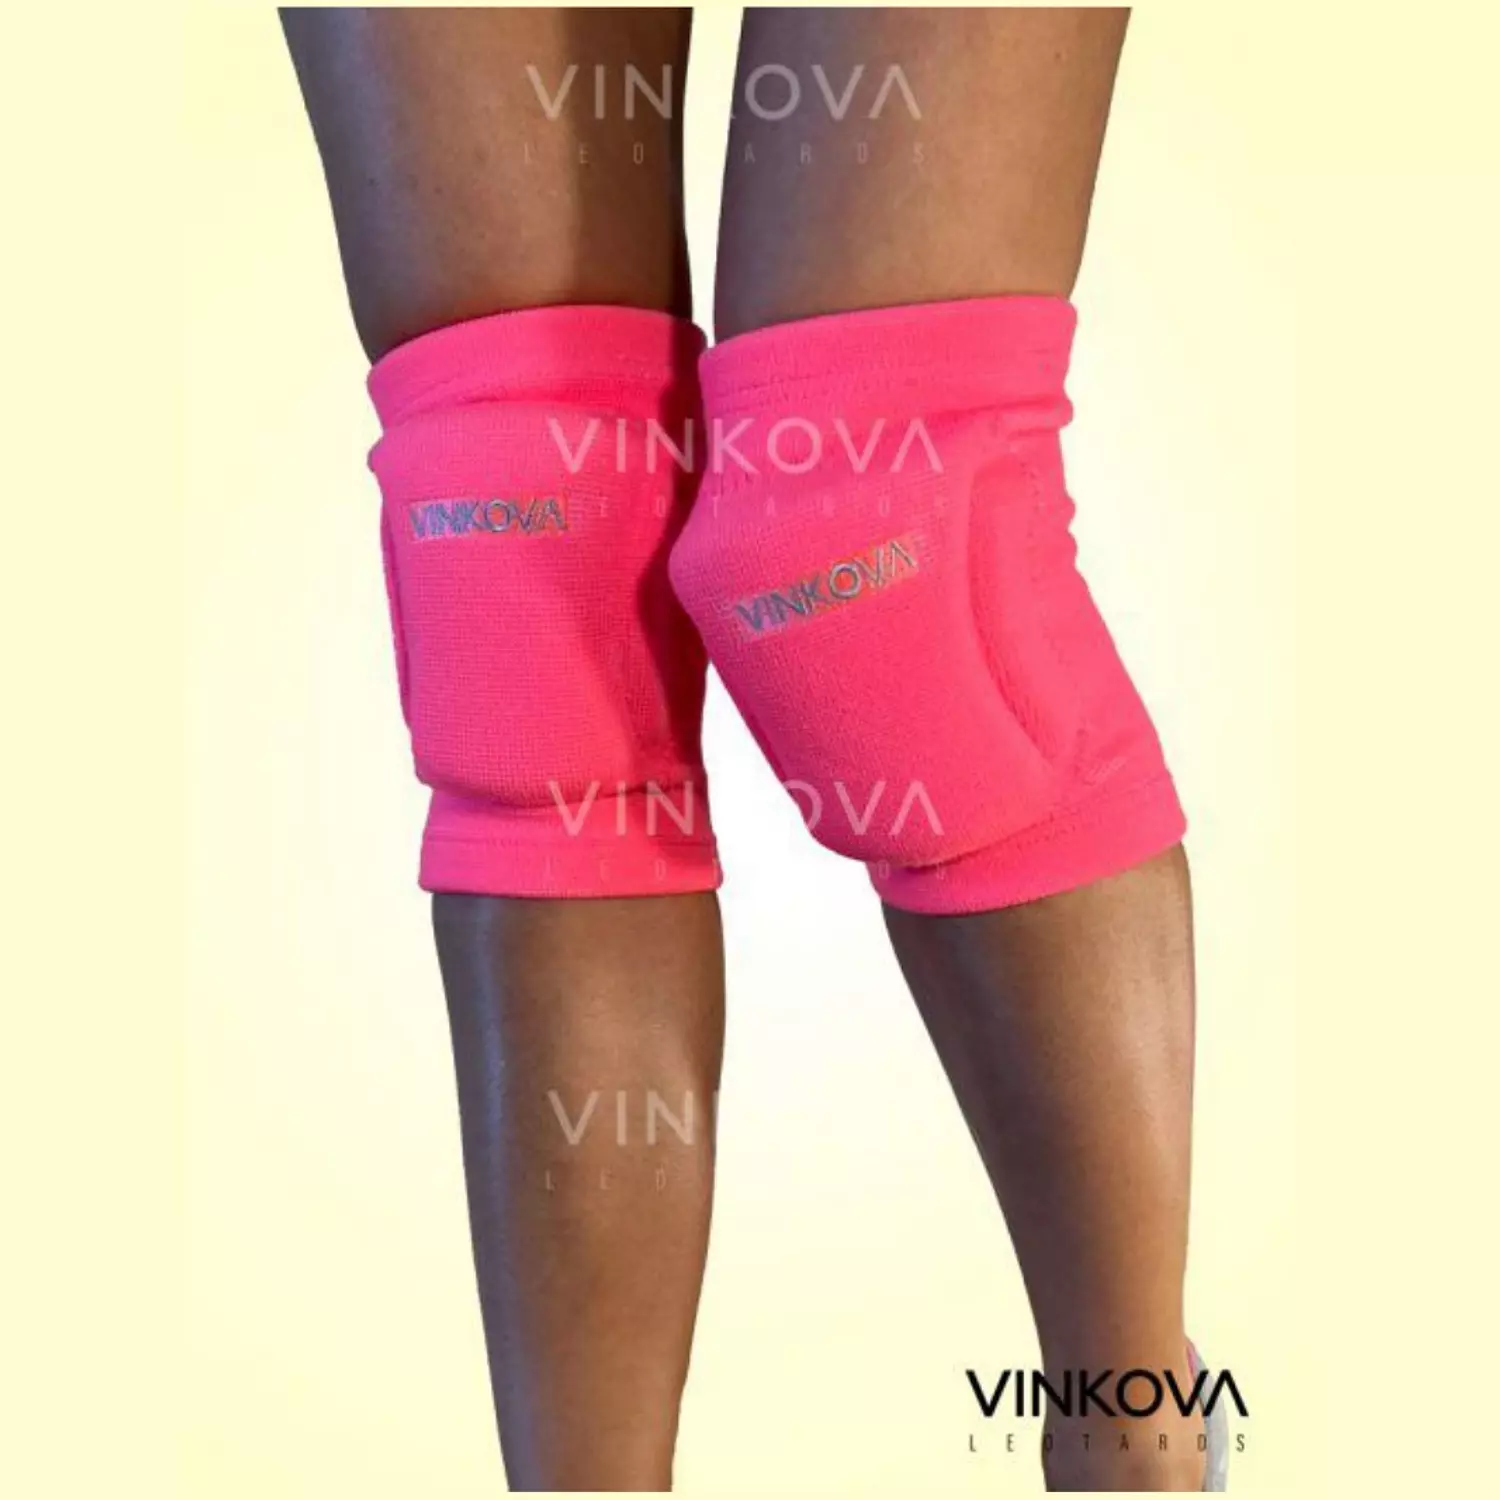 Vinkova-Knee Pads Pink Fluor hover image